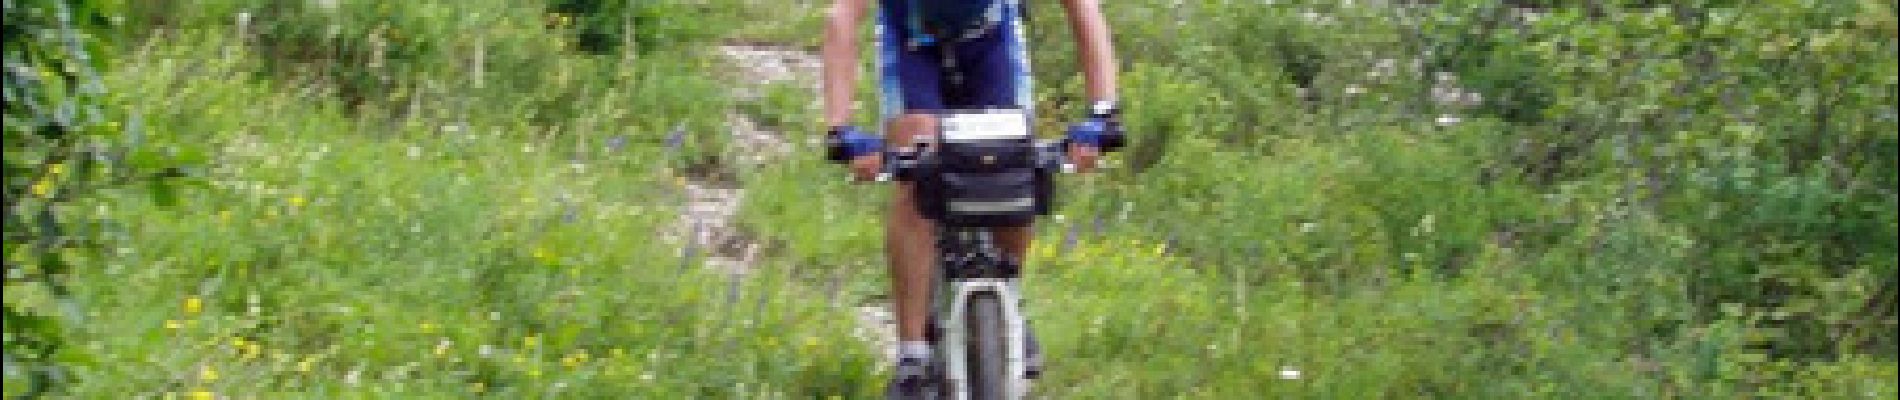 Percorso Mountainbike Le Bourg-d'Oisans - Tour VTT intégral du Parc National des Ecrins en 9 jours - Photo